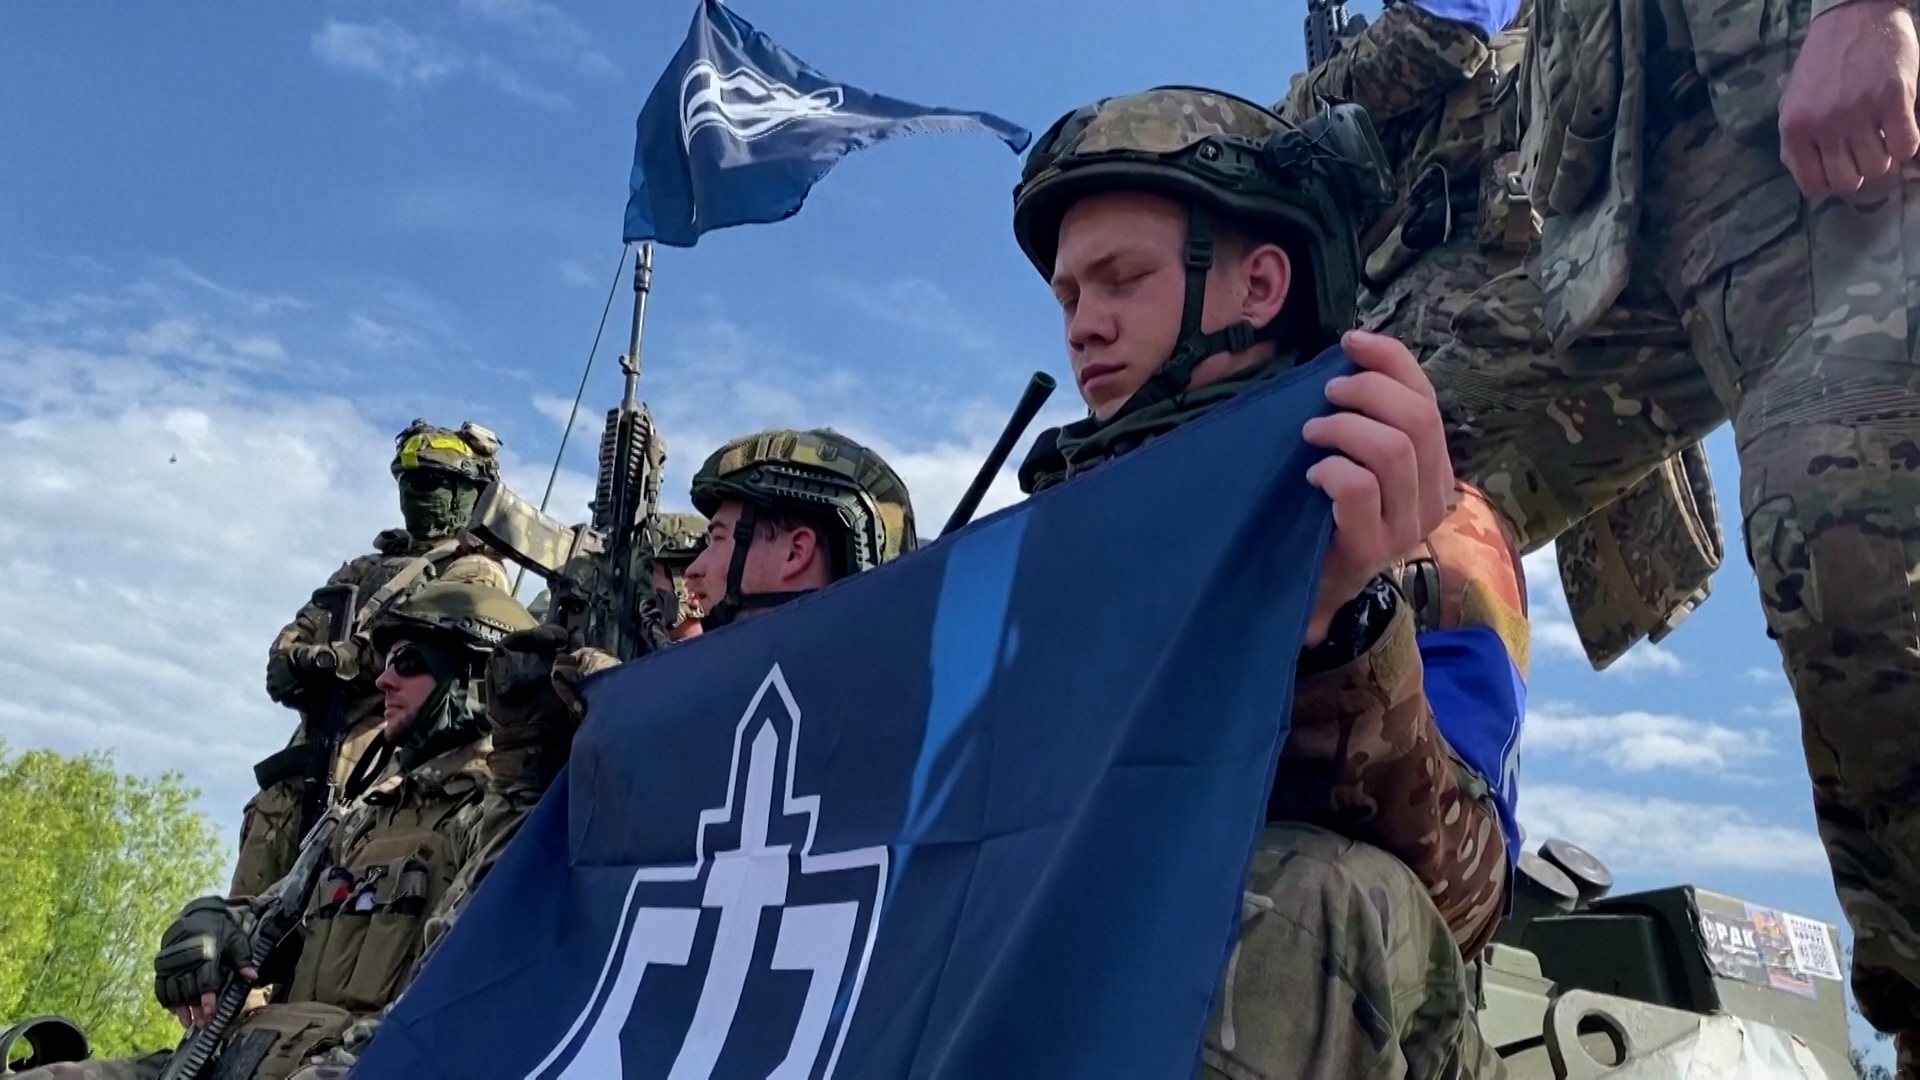 Las dos formaciones que luchan con el ejército ucraniano contra las fuerzas armadas rusas tienen como objetivo declarado “liberar” Rusia de Vladímir Putin (Reuters)